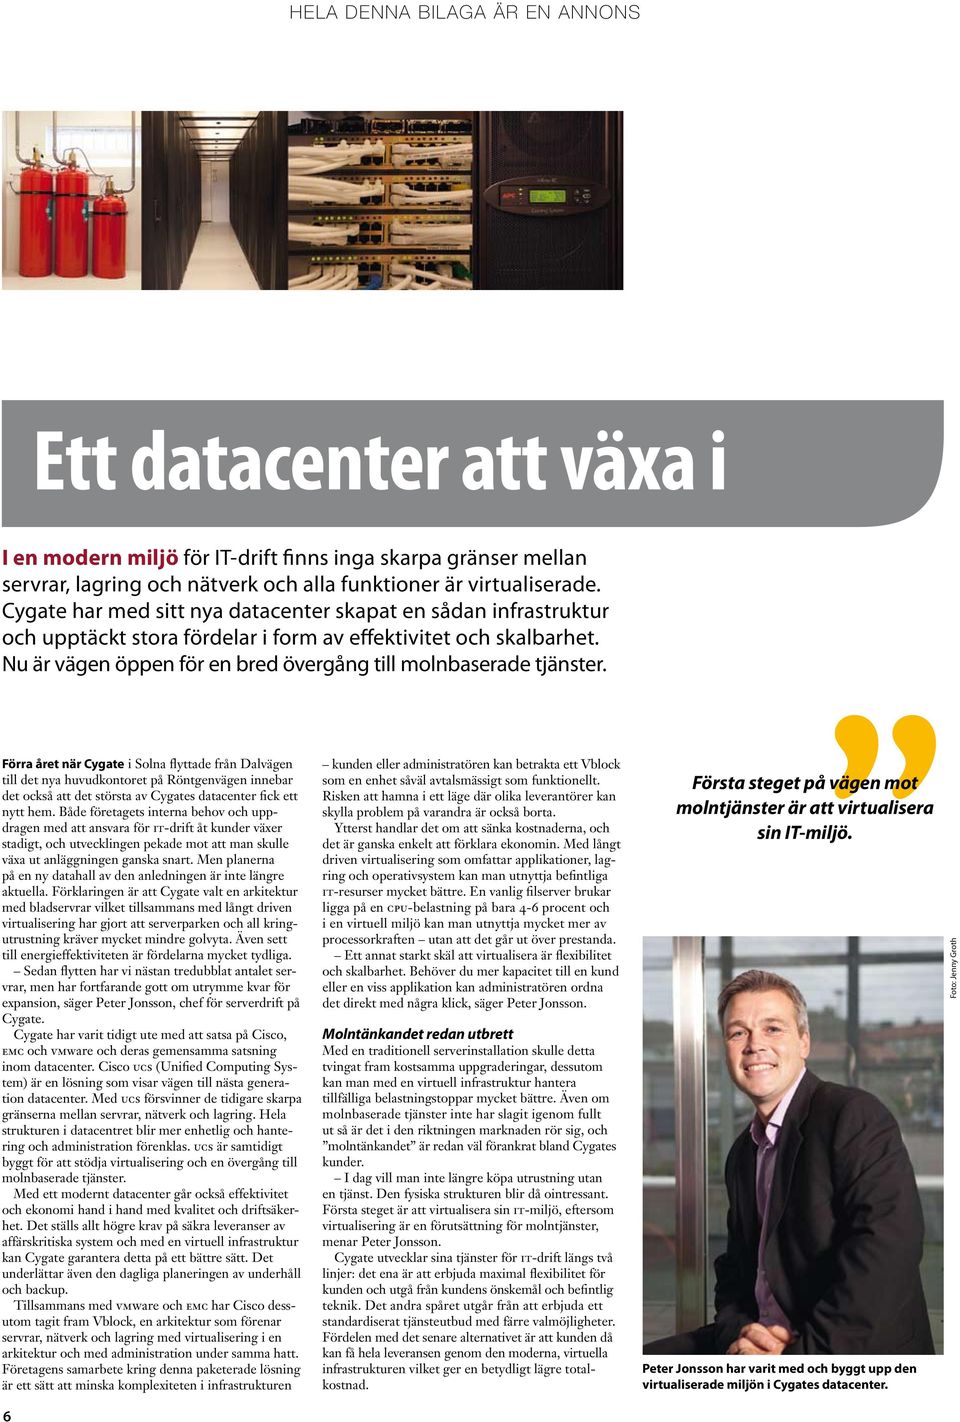 Förra året när Cygate i Solna flyttade från Dalvägen till det nya huvudkontoret på Röntgenvägen innebar det också att det största av Cygates datacenter fick ett nytt hem.